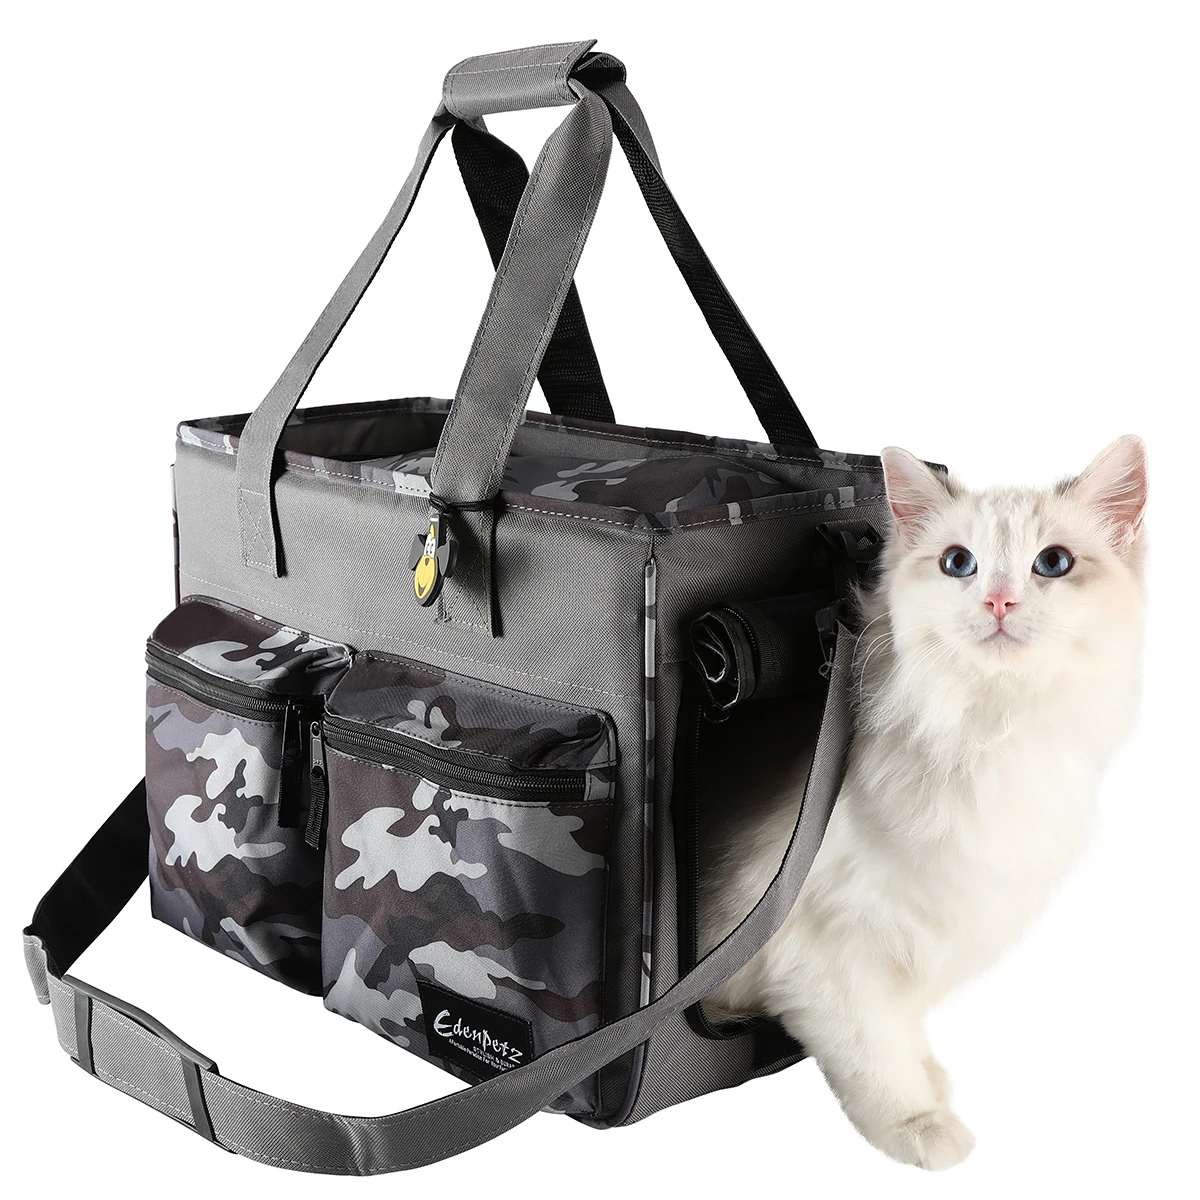 

Free Ship RU ES FR Pet Cat Dog Carrier Bags Portable Backpack Airline Approved Transport Camouflage Soft Comfort Handbag